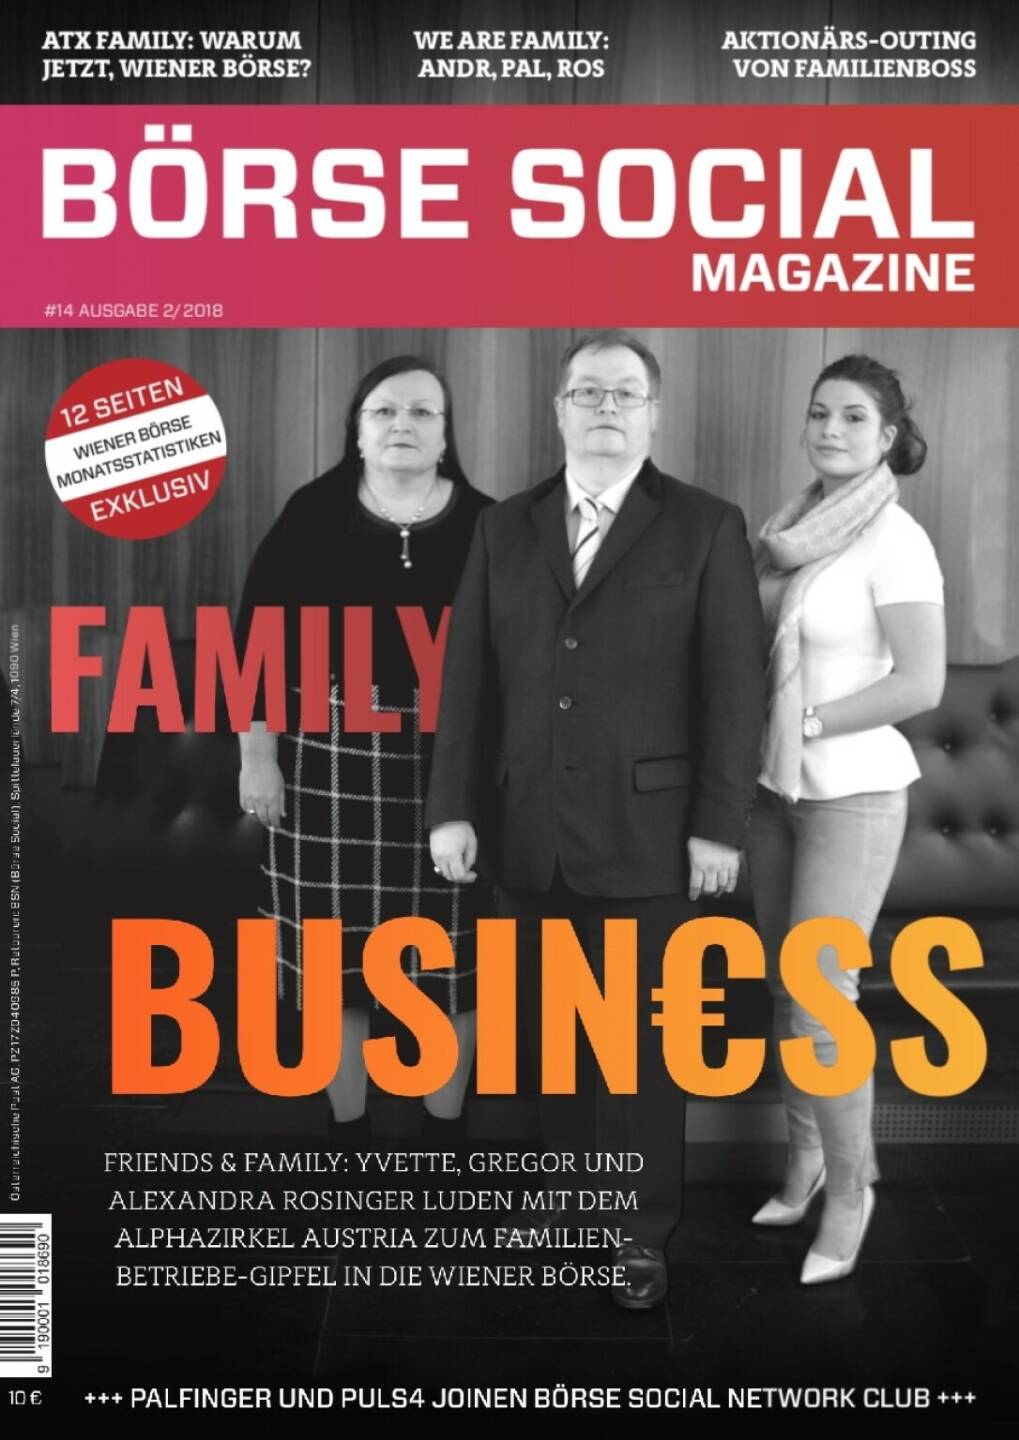 Magazine #14 - Februar 2018: Die Rosinger Group mit Yvette, Gregor und Alexandra zieht immer stärker in der Wiener Börse ein